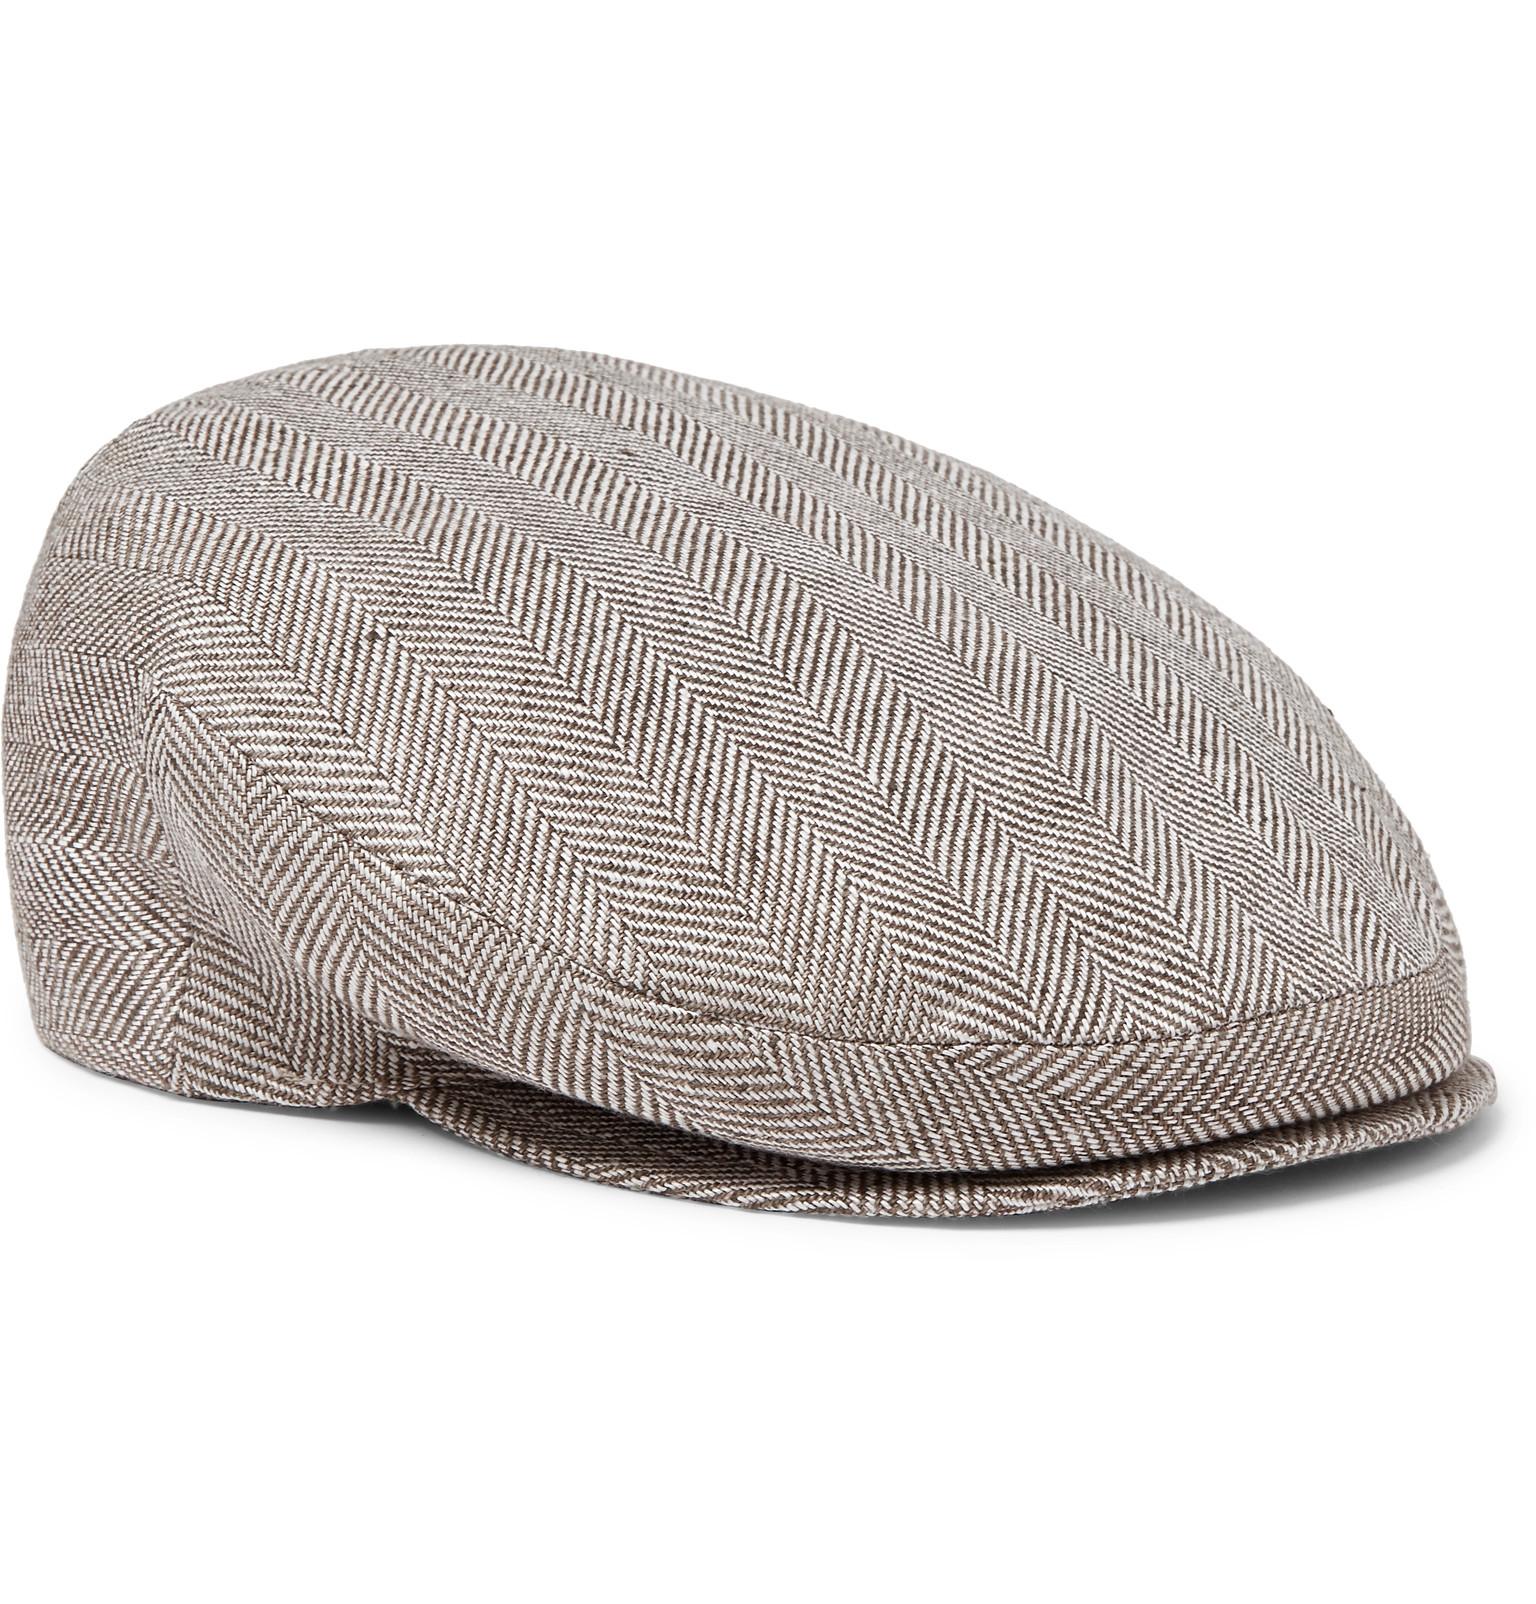 Borsalino Herringbone Linen Flat Cap in Brown for Men - Lyst